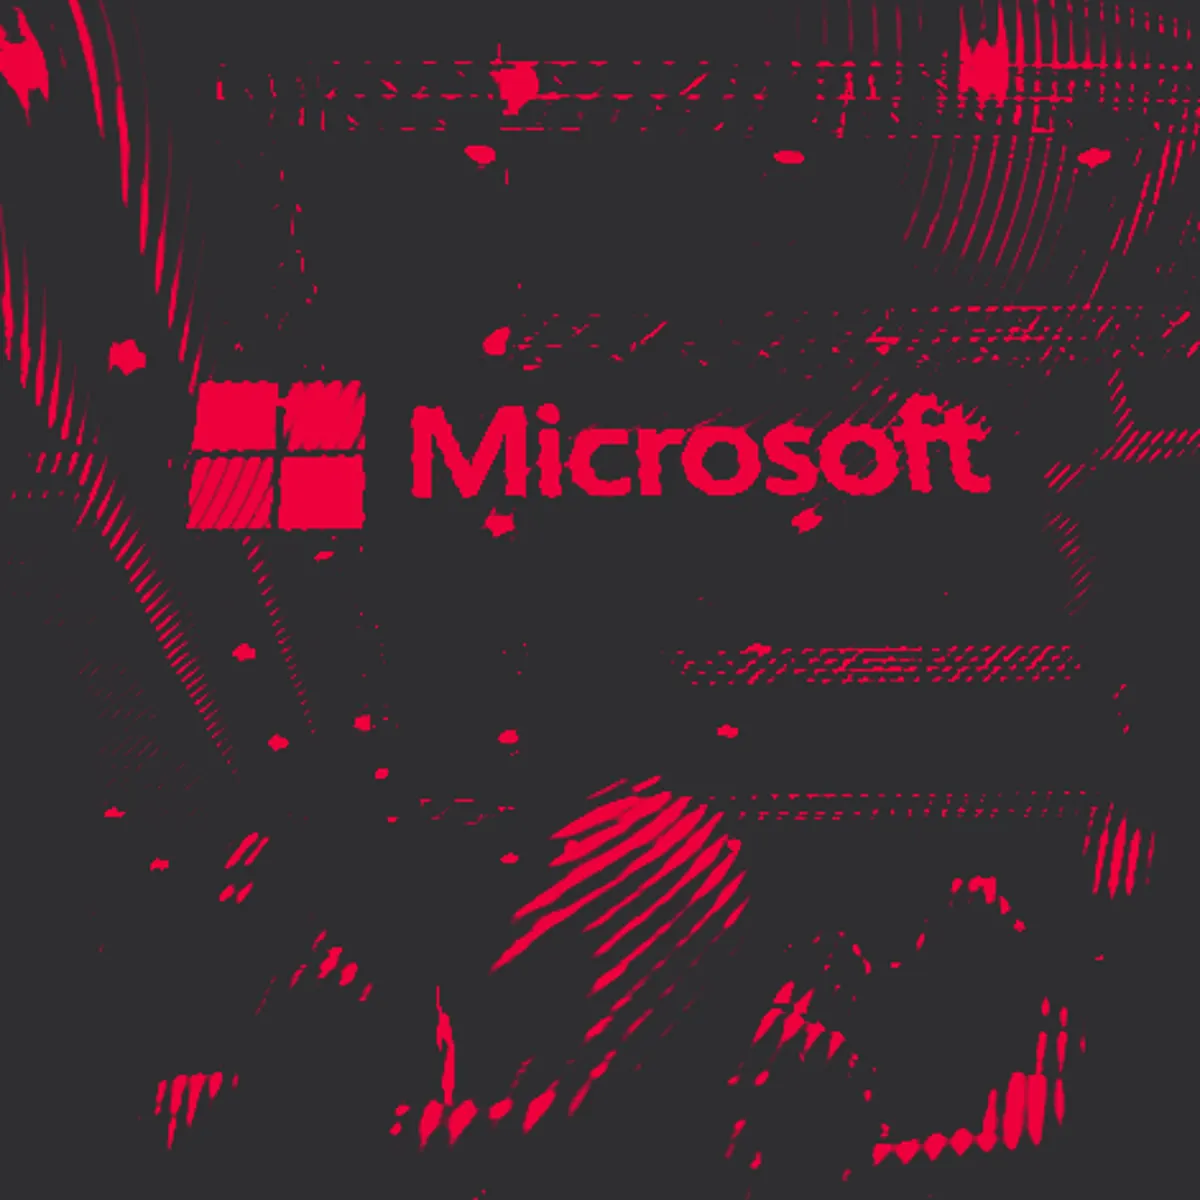 США продолжает пользоваться услугами Microsoft, несмотря на недостаточное обеспечение компанией кибербезопасности